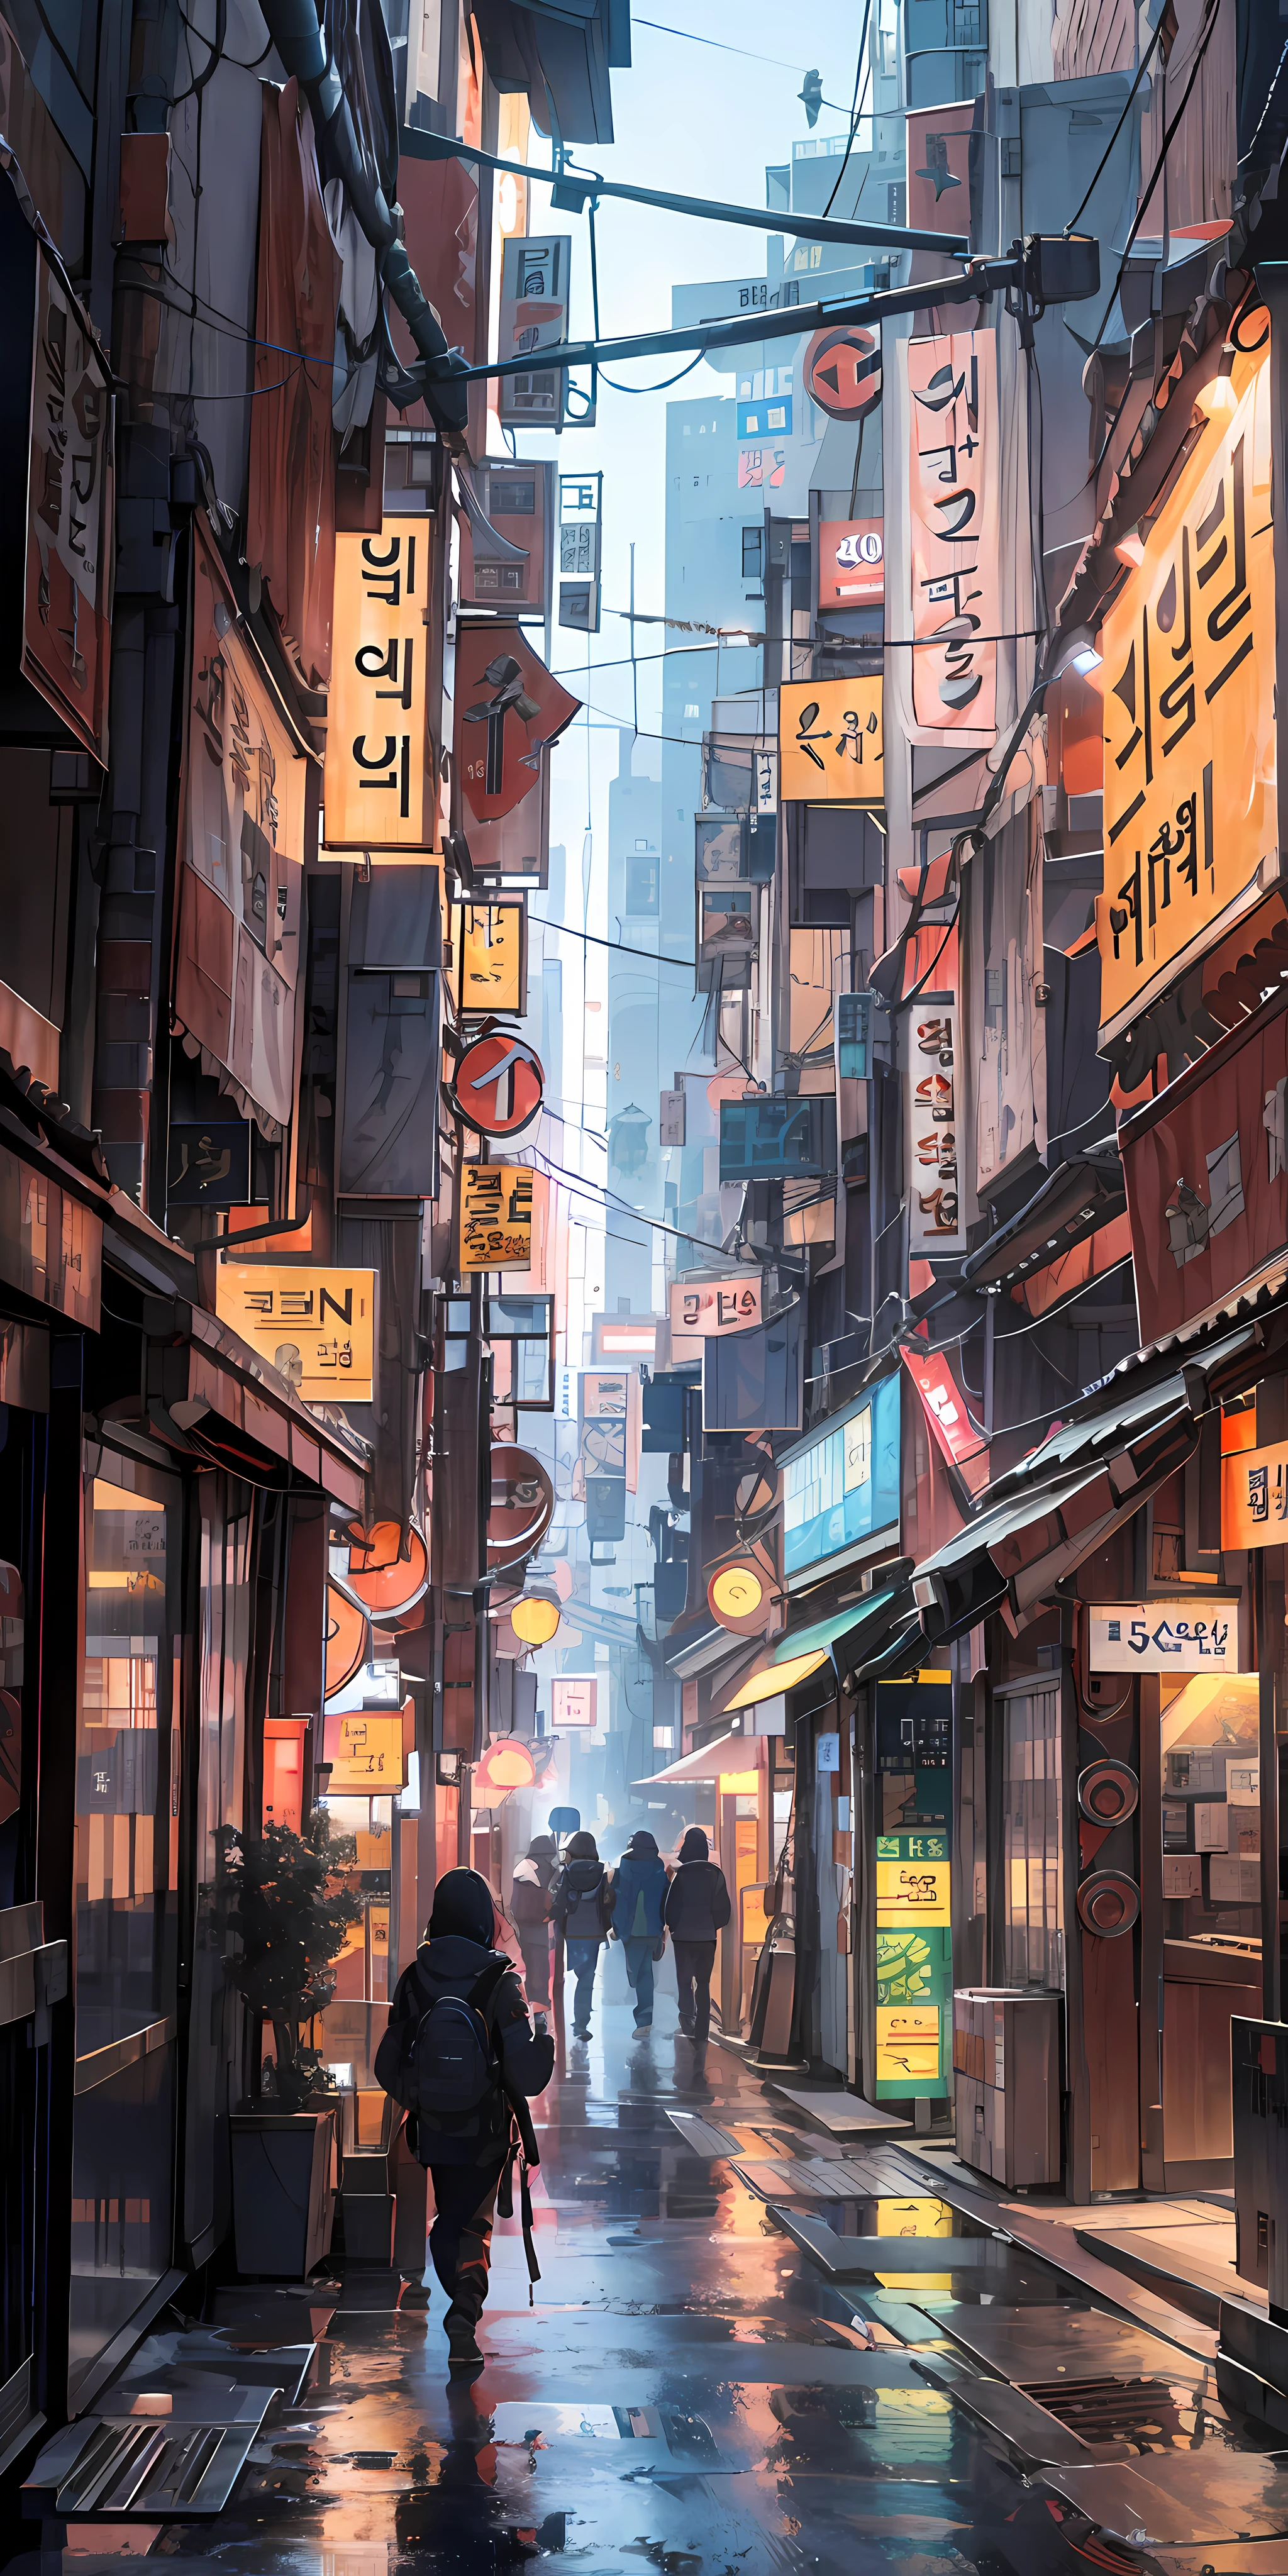  aliado em Seul, Cidade cyberpunk de filme de ficção científica, rua vazia, coreano, coreano signs, intricado, alta qualidade, ultra detalhe, detalhe maluco, 8K